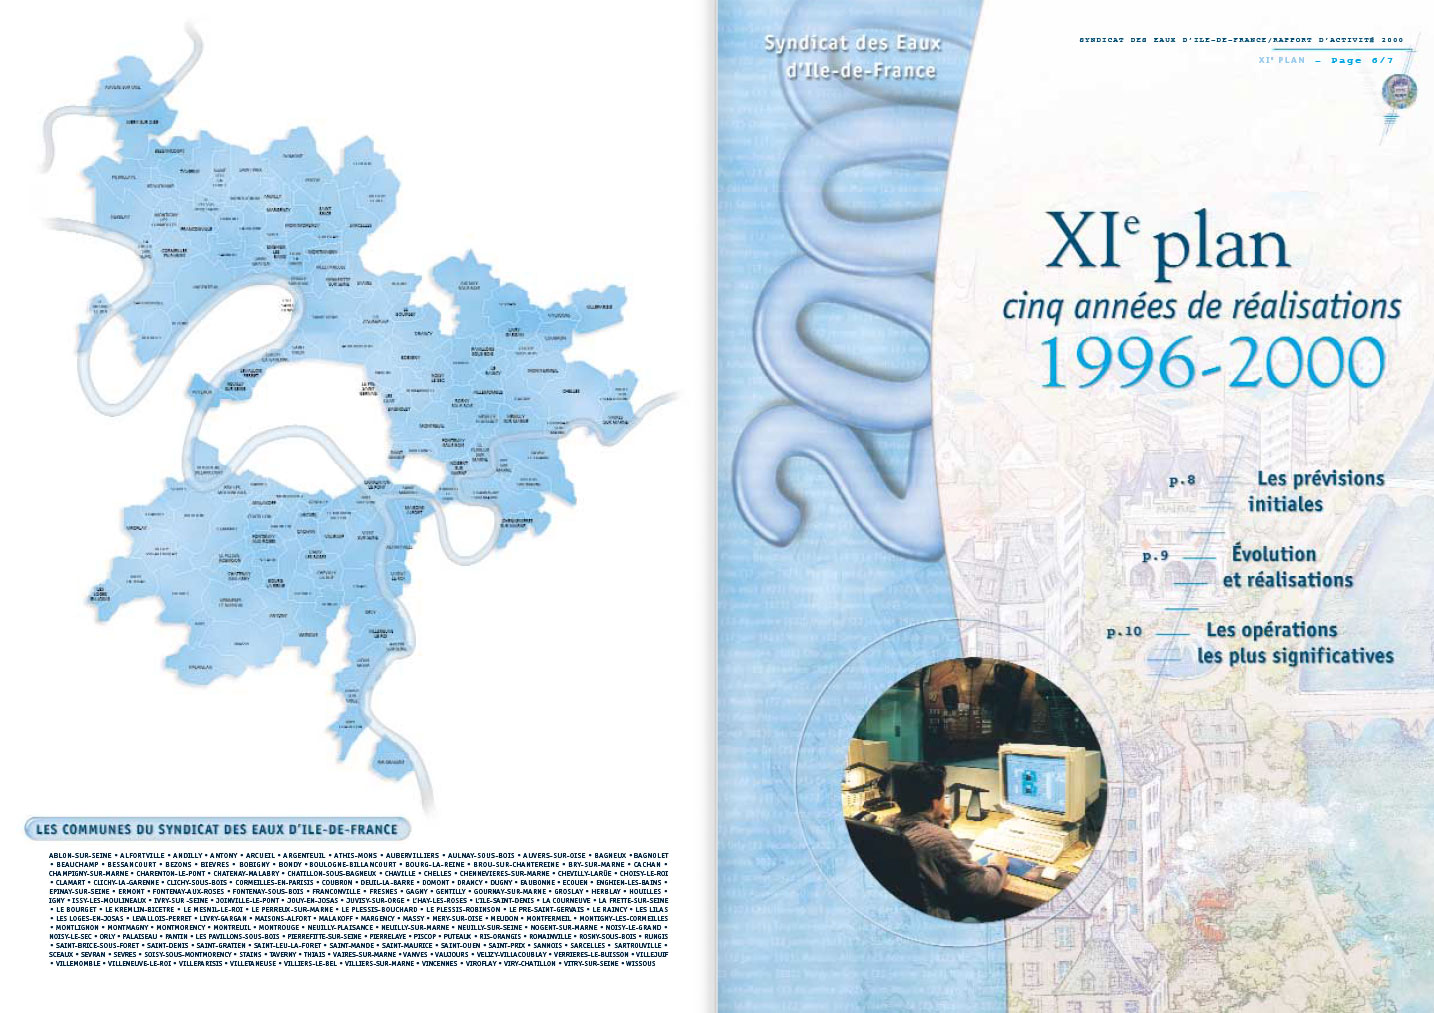 © Thierry Palau - rapport annuel Syndicat des Eaux d'Ile-de-France (Sedif)